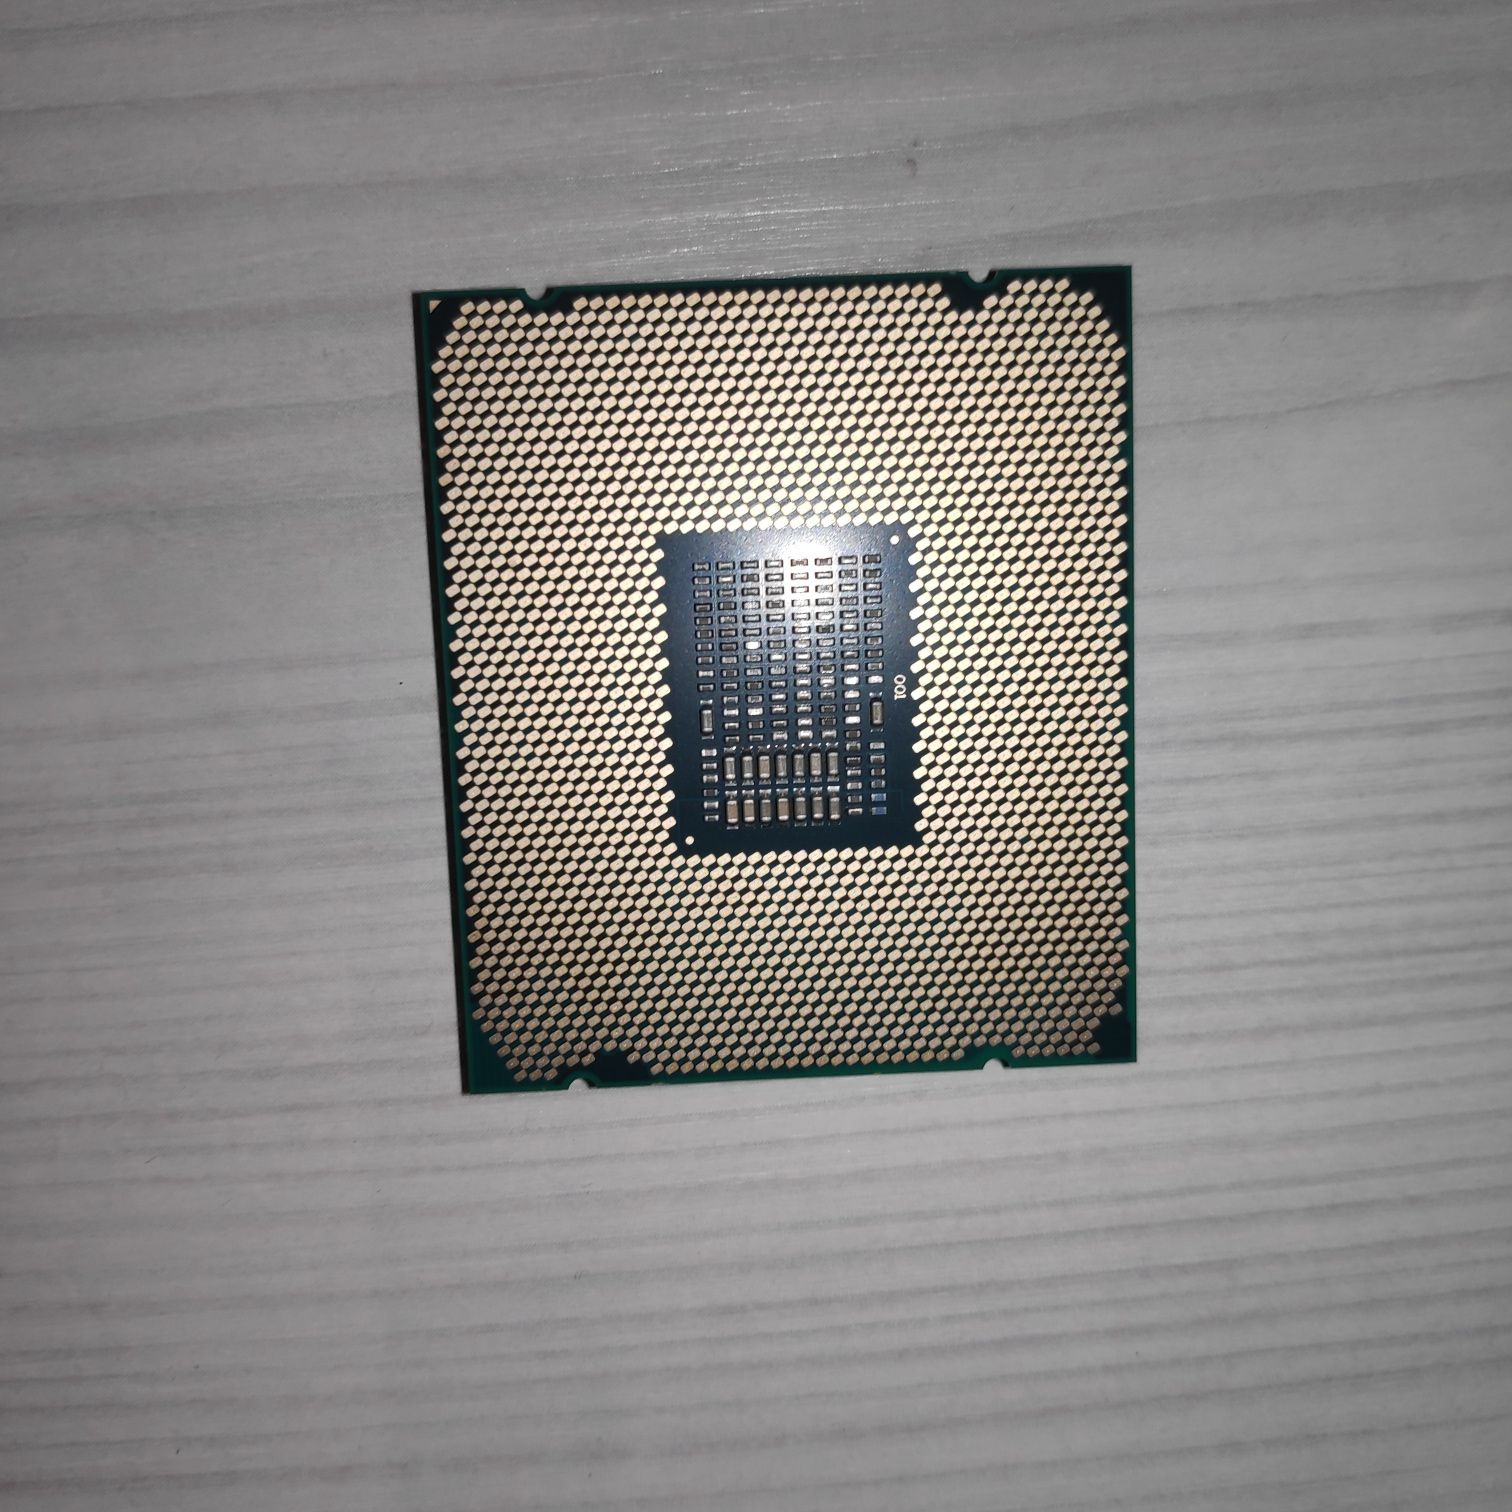 Топ Процессор Intel Core i9-7920X (BX80673I97920X)ГАРАНТИЯ Socket 2066